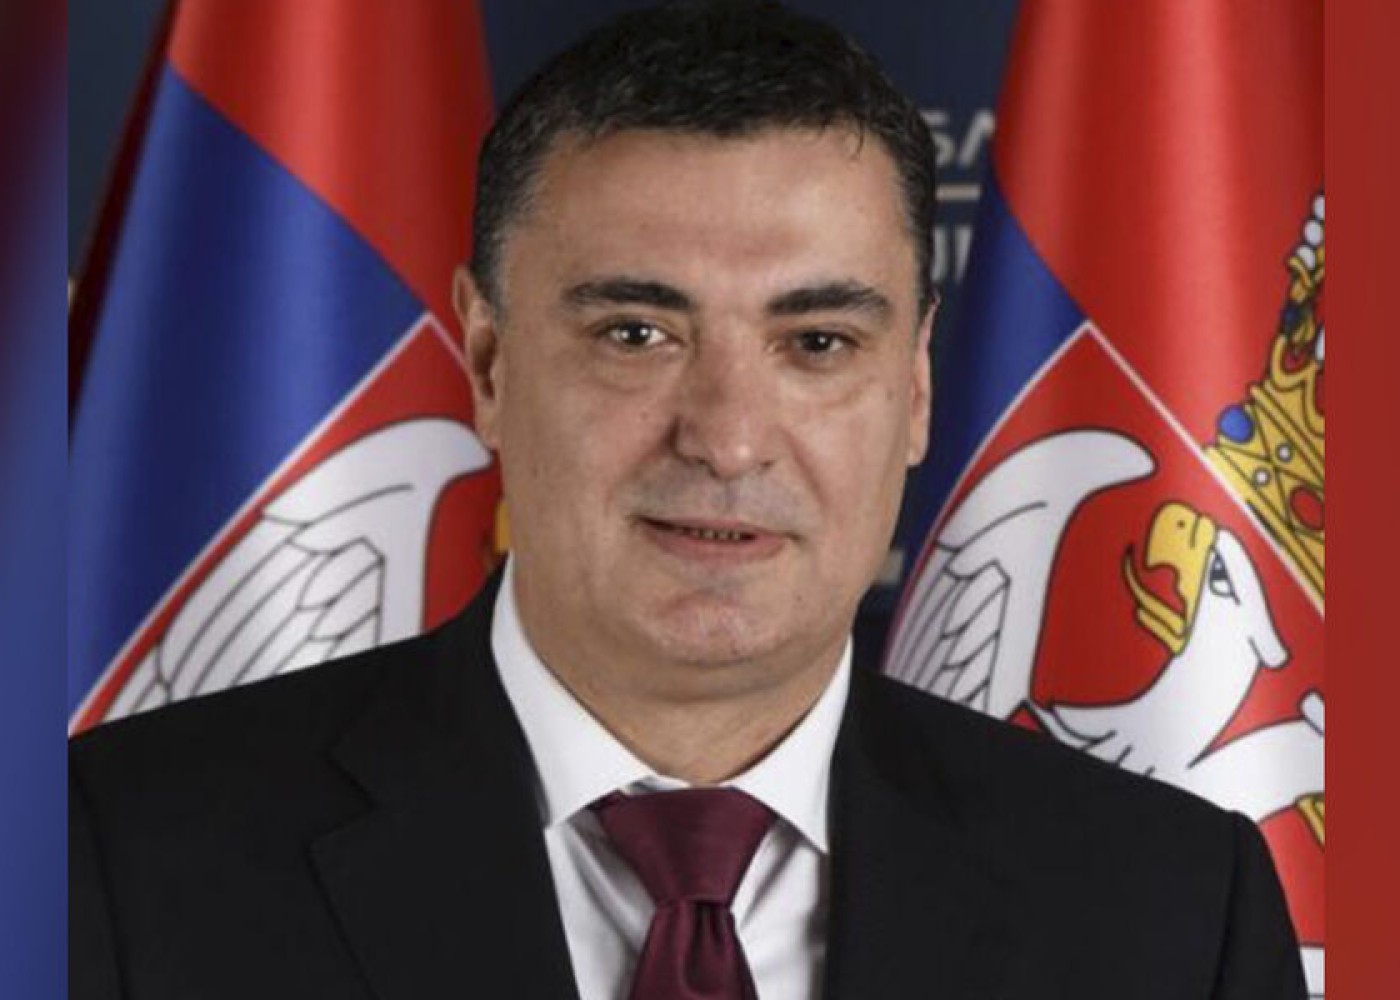 Serbiyanın iqtisadiyyat naziri işdən çıxarıldı